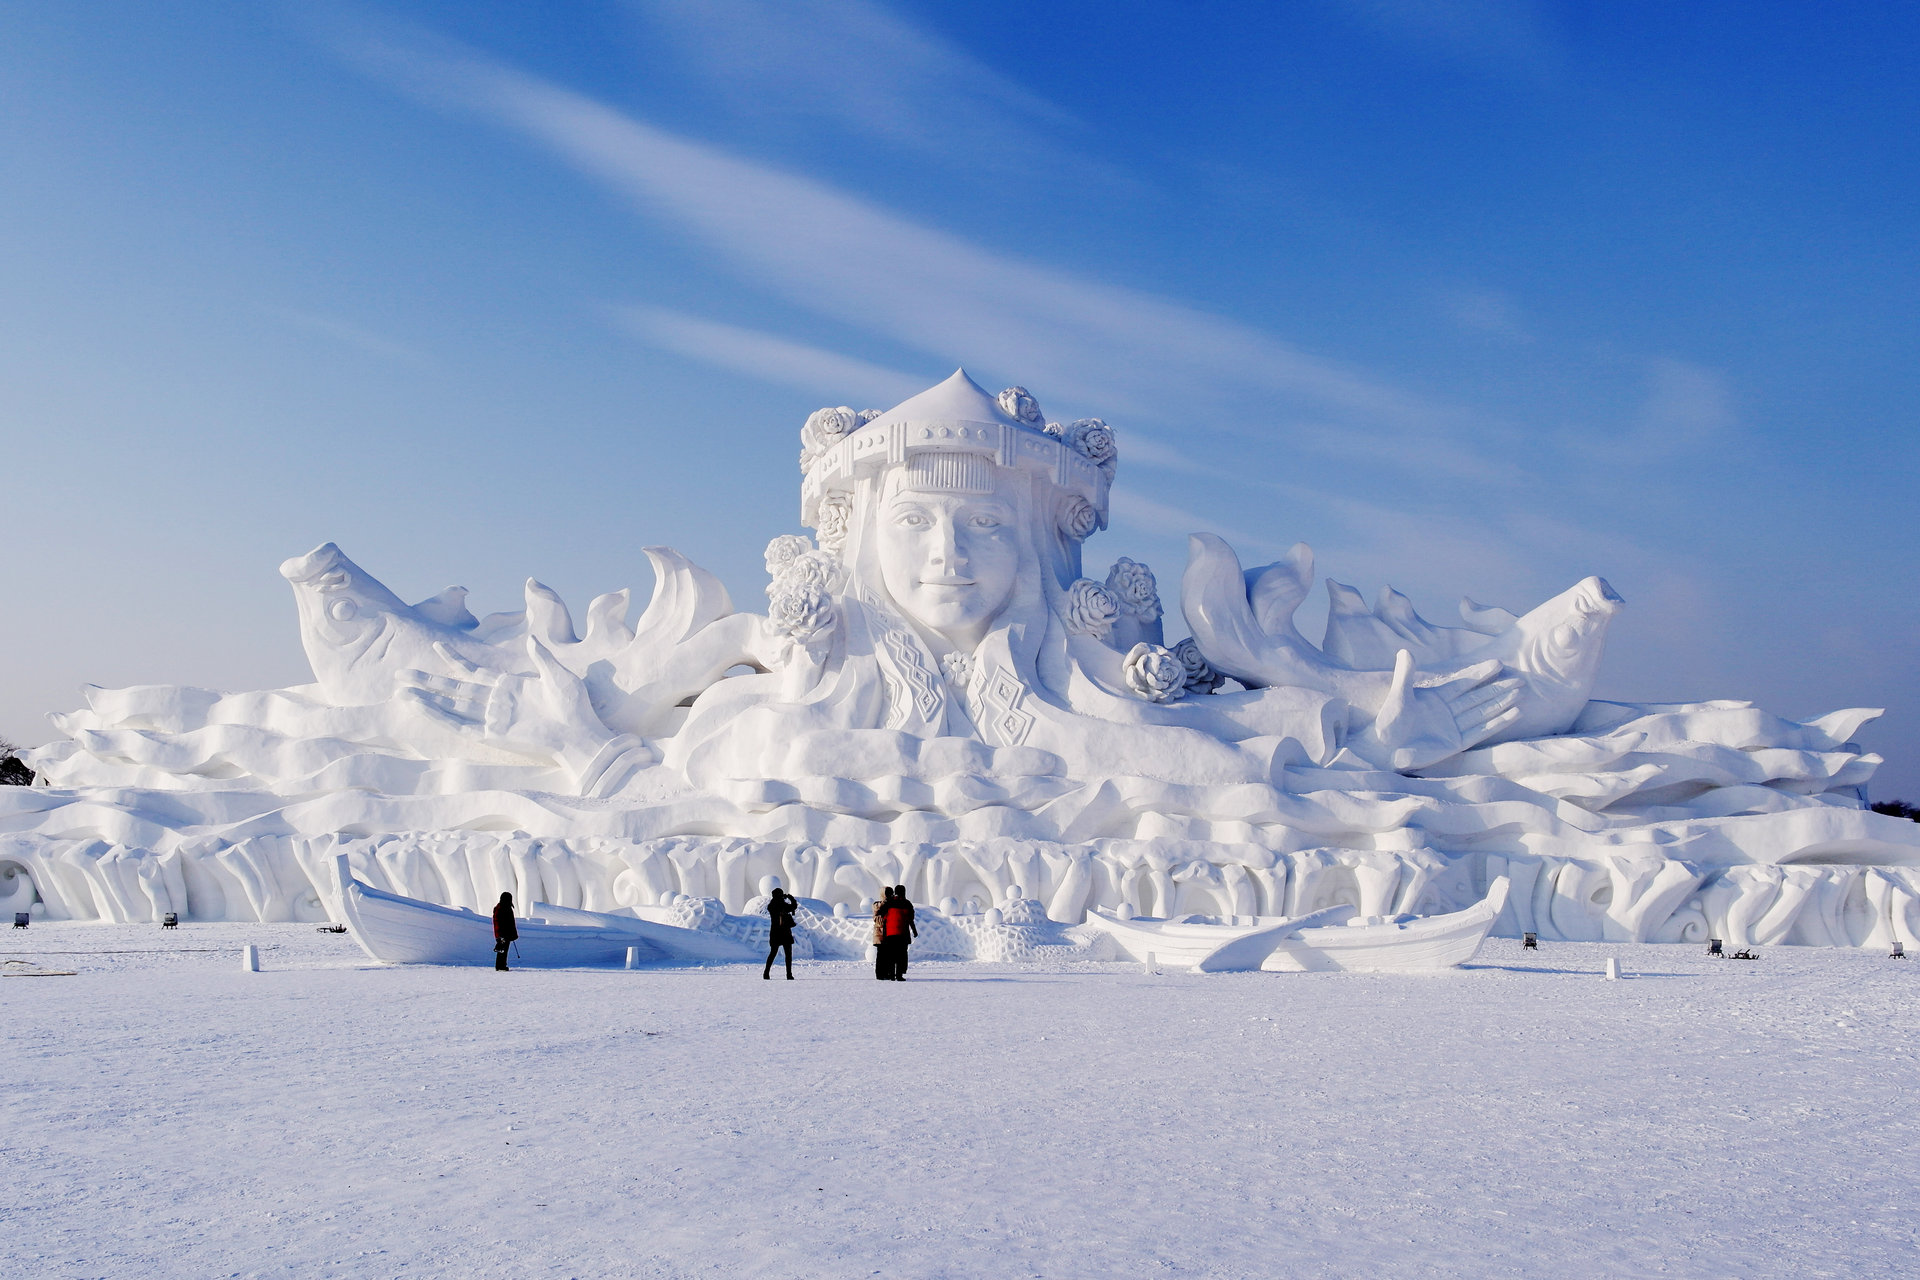 太陽島國際雪雕藝術博覽會